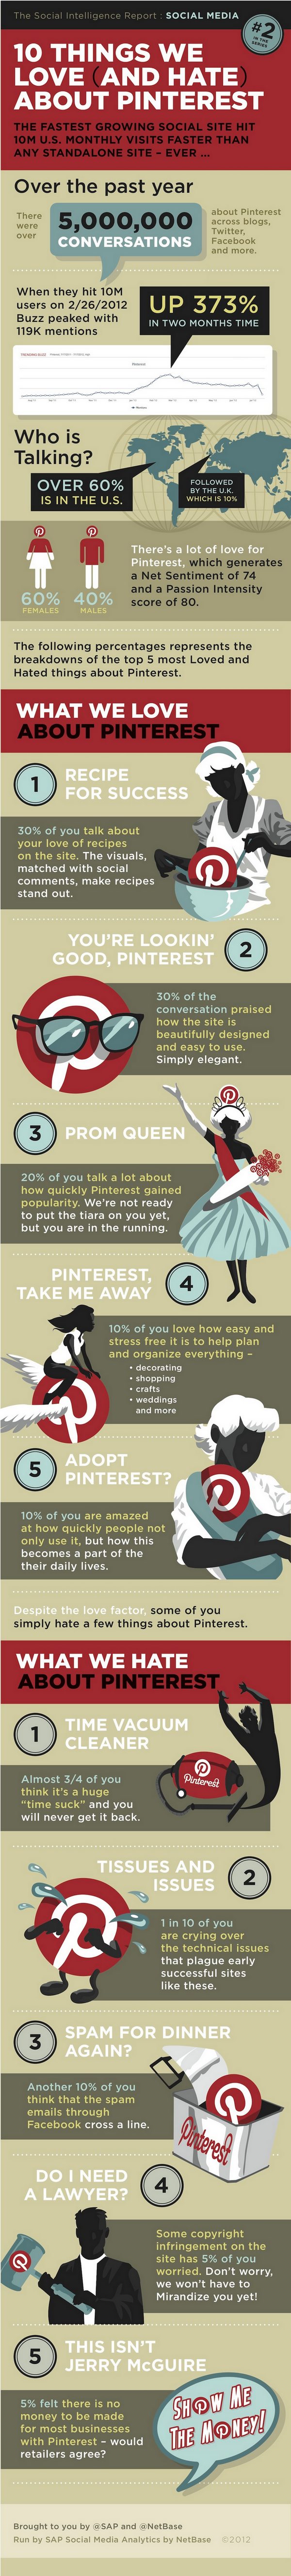 Las 10 cosas más amadas y odiadas de Pinterest 1